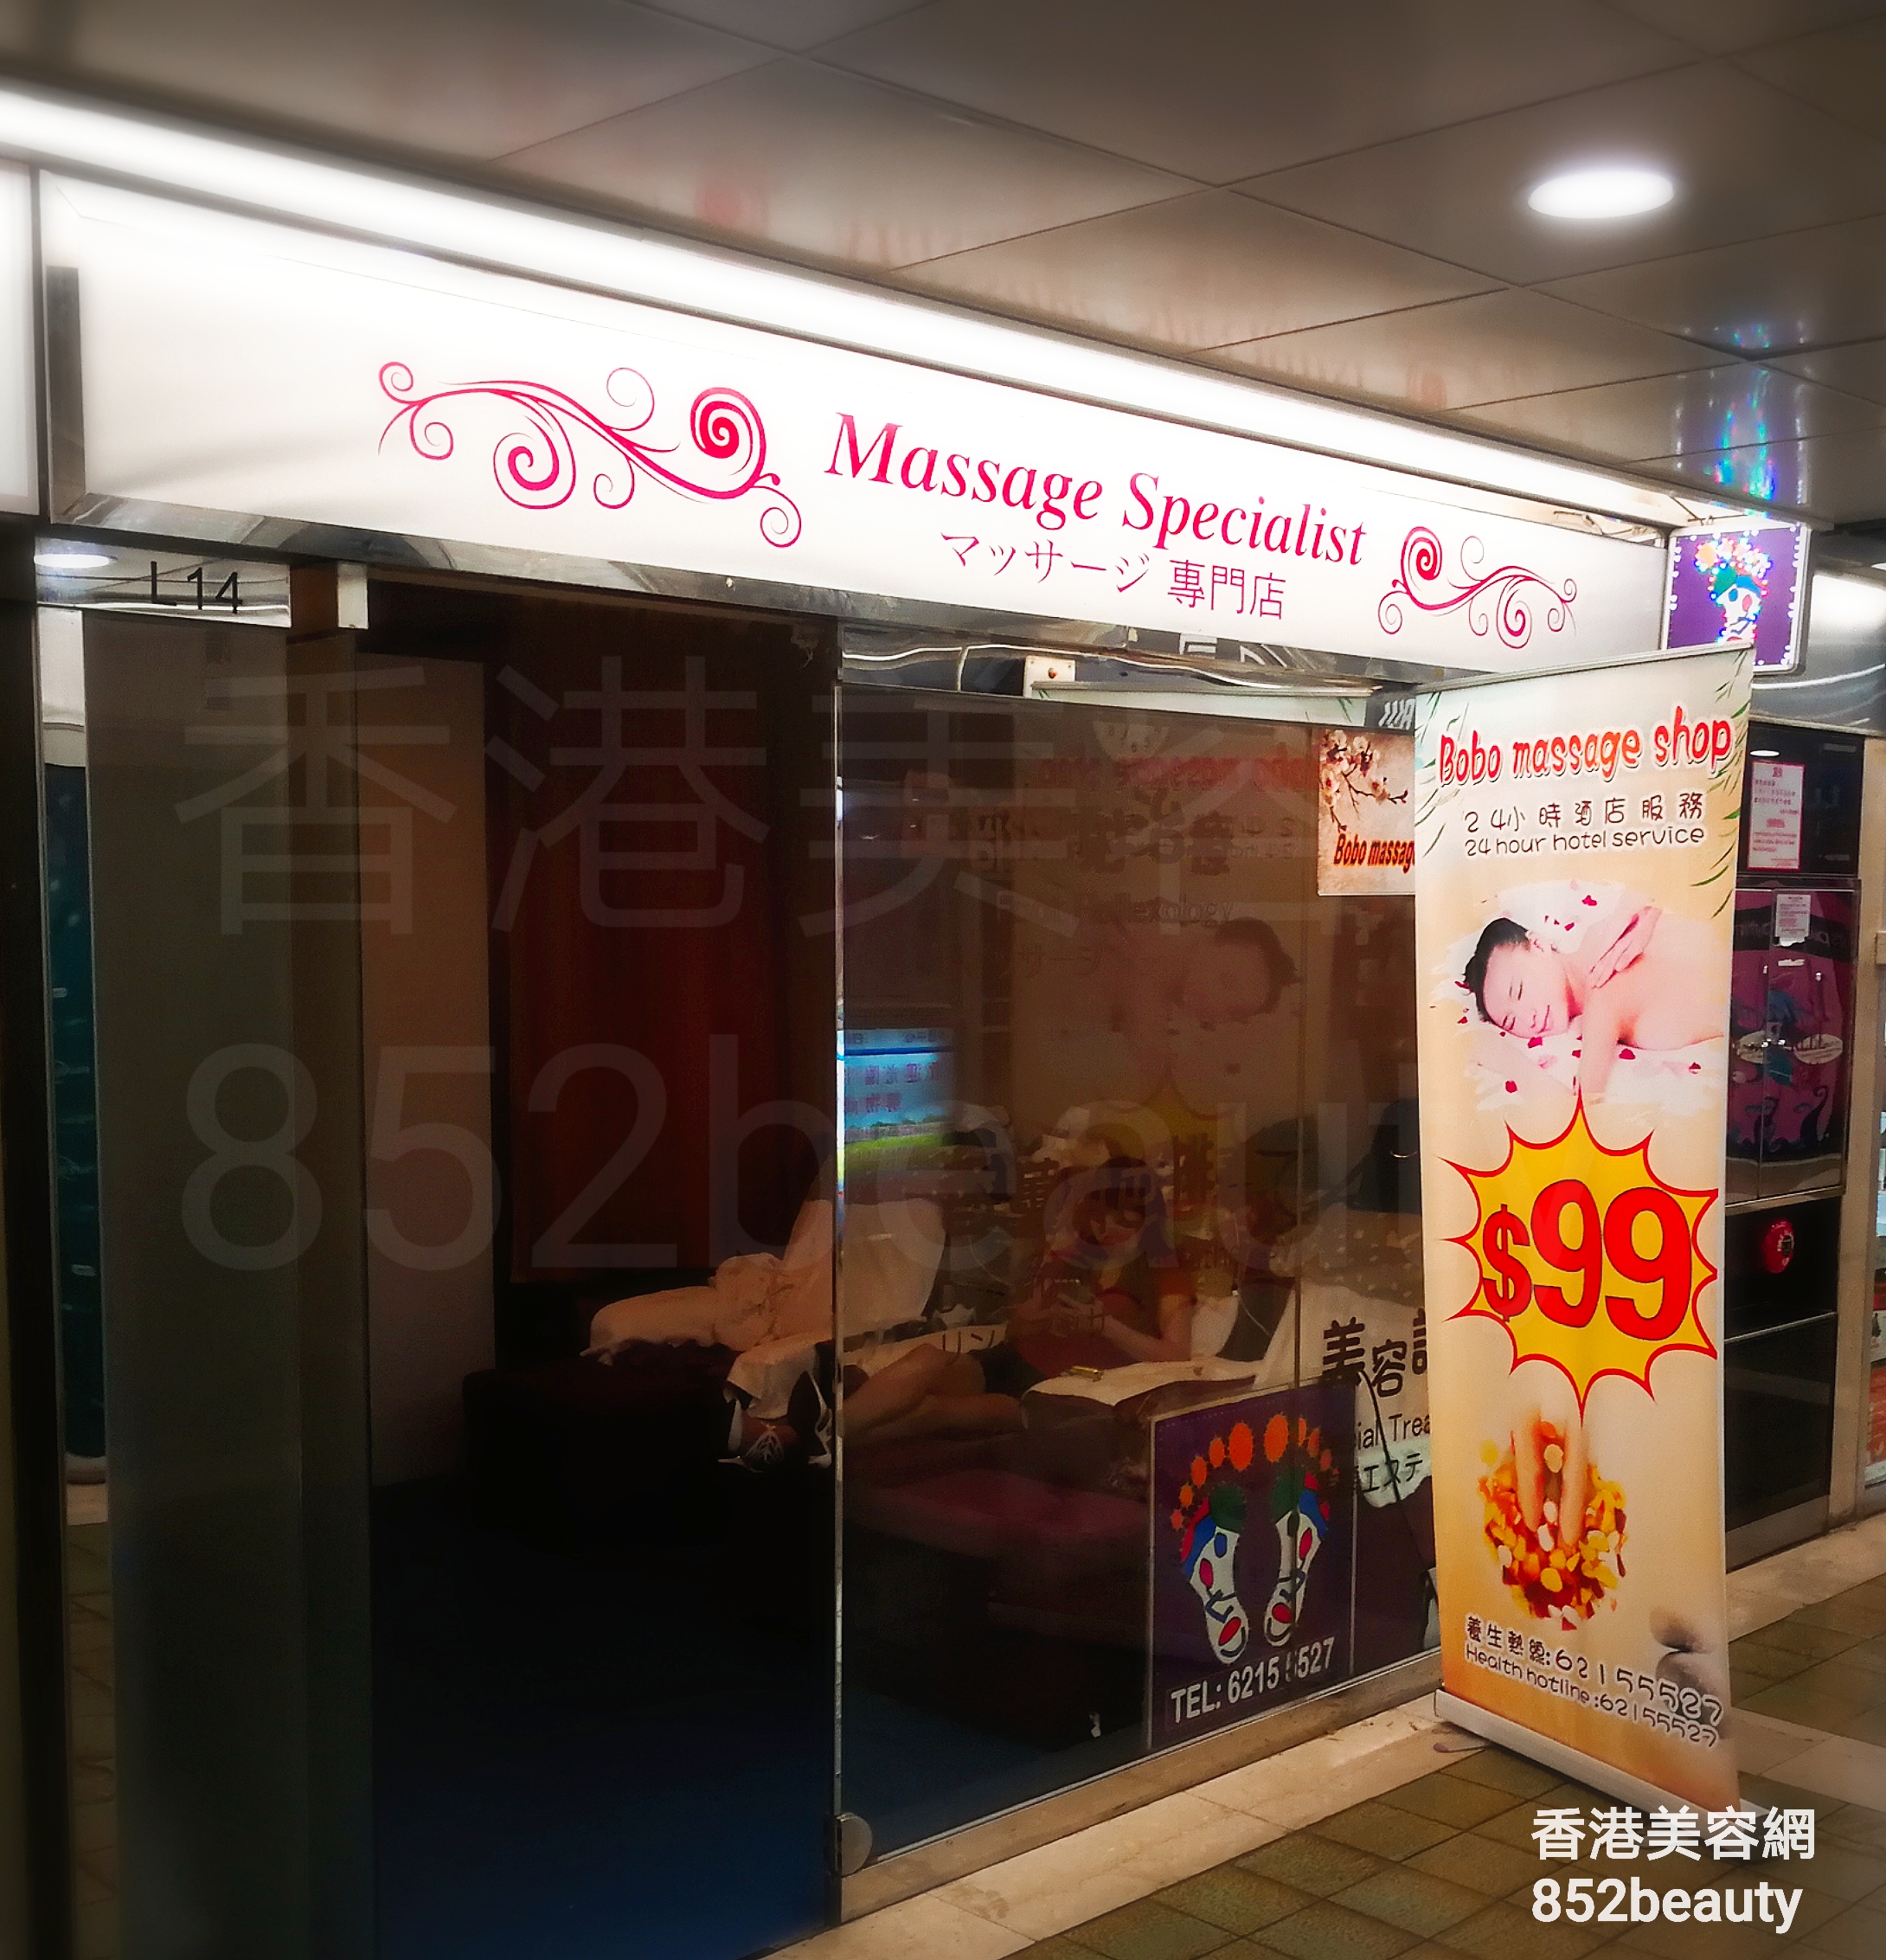 美容院 Beauty Salon: BoBo massage shop